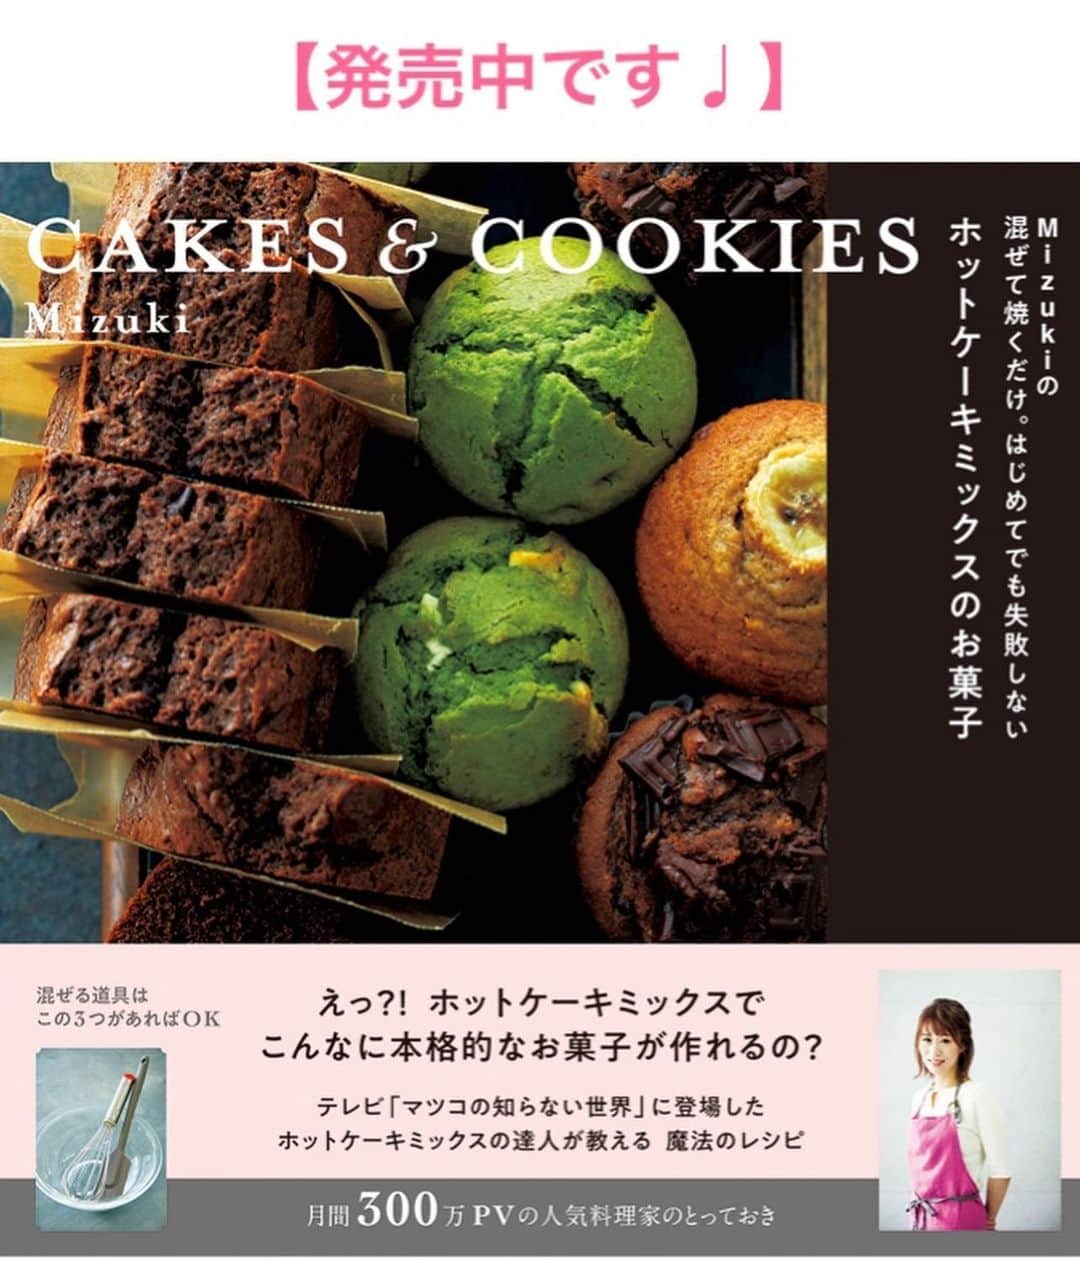 Mizuki【料理ブロガー・簡単レシピ】さんのインスタグラム写真 - (Mizuki【料理ブロガー・簡単レシピ】Instagram)「・﻿ 【レシピ】ーーーーーーーーーーー﻿ ♡ツナとほうれん草の甘辛和え♡﻿ ーーーーーーーーーーーーーーーー﻿ ﻿ ﻿ おはようございます(*^^*)﻿ ﻿ 今日ご紹介させていただくのは﻿ ツナとほうれん草の甘辛和え♩﻿ 味付けはめんつゆ使用の﻿ 超簡単時短レシピです(*´艸`)﻿ ちょっぴり甘めの味付けで﻿ ごま油の風味もよく合いますよ〜♡﻿ ﻿ 栄養たっぷりなので﻿ よかったらお試し下さいね(*^^*)﻿ ﻿ ﻿ ﻿ ーーーーーーーーーーーーーーーーーーーー﻿ 【2〜4人分】﻿ ほうれん草...1束﻿ ツナ...1缶(70g)﻿ ●めんつゆ(2倍濃縮)...大1.5﻿ ●砂糖・ごま油...各小1﻿ (好みで)ごま...適量﻿ ﻿ 1.ほうれん草は塩(分量外)を加えた熱湯でさっと茹でる。流水で冷やして水気を切り、4cm長さに切る。﻿ 2.ボウルに油を切ったツナと●を入れて混ぜ、1を加えて和える。器に盛り、ごまを振る。﻿ ーーーーーーーーーーーーーーーーーーーー﻿ ﻿ ﻿ ﻿ 《ポイント》﻿ ♦︎めんつゆが3倍濃縮の場合は［大1］にして下さい♩﻿ ♦︎ほうれん草の代わりに小松菜やブロッコリーで作っても♩﻿ ﻿ ﻿ ﻿ ﻿ ﻿ ﻿ ﻿ 🔻入荷しました🔻﻿ ストーリーにリンク貼っています🙇‍♀️﻿ ＿＿＿＿＿＿＿＿＿＿＿＿＿＿＿＿＿＿＿﻿ 📕\ \ 新刊発売中 / /📕﻿ 簡単・時短！ 毎日のごはんがラクになる﻿ ✨🦋 【 #Mizukiの今どき和食 】🦋✨﻿ ＿＿＿＿＿＿＿＿＿＿＿＿＿＿＿＿＿＿＿﻿ ﻿ なるべく少ない材料で﻿ 手間も時間も省きながら﻿ 簡単にできるおいしい和食レシピ♩﻿ 簡単に失敗なくマスターできる一冊で﻿ もっと気軽に、カジュアルに﻿ 和食を楽しんで下さいね(*^^*)﻿ ﻿ ﻿ ーーー ⭐️PART.1 メインおかず ⭐️ーーー﻿ 素材別にレシピをご紹介しています♩﻿ 和食の定番から新定番まで﻿ どれも押さえておきたいメニューばかり。﻿ 肉じゃがはフライパンで！焼き豚はレンジで！﻿ ぶり大根は切り身を使って手軽に作ります♩﻿ ﻿ ーーー ☘️PART.2 サブおかず ☘️ーーー﻿ 年中手に入るお手頃野菜と﻿ 乾物や大豆、こんにゃくなどを使った﻿ 副菜レシピをたっぷり掲載！！﻿ 普段SNSではメインおかずばかりなので﻿ 本では副菜にも力を入れています(*^^*)﻿ ﻿ ーーー 🌸PART.3 ごはんと汁物 🌸ーーー﻿ ささっと作れる丼と麺、﻿ みんなで食べたいいなり寿司や﻿ 手巻きごはんもご紹介！﻿ 複数の炊き込みごはんと﻿ 味噌汁&和風スープも盛りだくさん！﻿ ﻿ ﻿ 各レシピのポイントは﻿ 【写真付きで丁寧に解説】﻿ 副菜レシピもたっぷりなので﻿ 【メインページに副菜メモもつけました】﻿ ＊このメインにはこの副菜が合いますよ〜﻿ という献立の提案です(*^^*)﻿ 【その他コラムも充実】﻿ 全127品中ほぼ全て﻿ 【本だけのレシピです！】﻿ ﻿ ＿＿＿＿＿＿＿＿＿＿＿＿＿＿＿＿＿＿＿﻿ ﻿ ﻿ ﻿ ﻿ ﻿ ﻿ ＿＿＿＿＿＿＿＿＿＿＿＿＿＿＿＿＿﻿ 🎀発売中🎀﻿ 【#ホットケーキミックスのお菓子 】﻿ ﻿ 一冊まるっとホケミスイーツ♩﻿ 普段のおやつから﻿ 特別な日にも使えるレシピを﻿ この一冊に詰め込みました(*^^*)﻿ ホットケーキミックスを使えば﻿ 簡単に本格的なお菓子が作れますよ♡﻿ ＿＿＿＿＿＿＿＿＿＿＿＿＿＿＿＿＿﻿ ﻿ ⭐️ストーリー、ハイライト、プロフ画面に﻿ 本のURLを貼らせていただいております♩﻿ →(@mizuki_31cafe )﻿ ﻿ ﻿ ﻿ ﻿ ﻿ ﻿ #ツナ#ほうれん草#めんつゆ#ごま油#副菜#お弁当#うちで過ごそう#おうち時間#Mizuki#簡単レシピ#時短レシピ#節約レシピ#料理#レシピ#フーディーテーブル#マカロニメイト#おうちごはん#おうちカフェ#デリスタグラマー#料理好きな人と繋がりたい#おうちごはんlover#foodpic#follow#cooking#recipe#lin_stagrammer#stayhome#ツナとほうれん草の甘辛和えm」5月15日 7時49分 - mizuki_31cafe